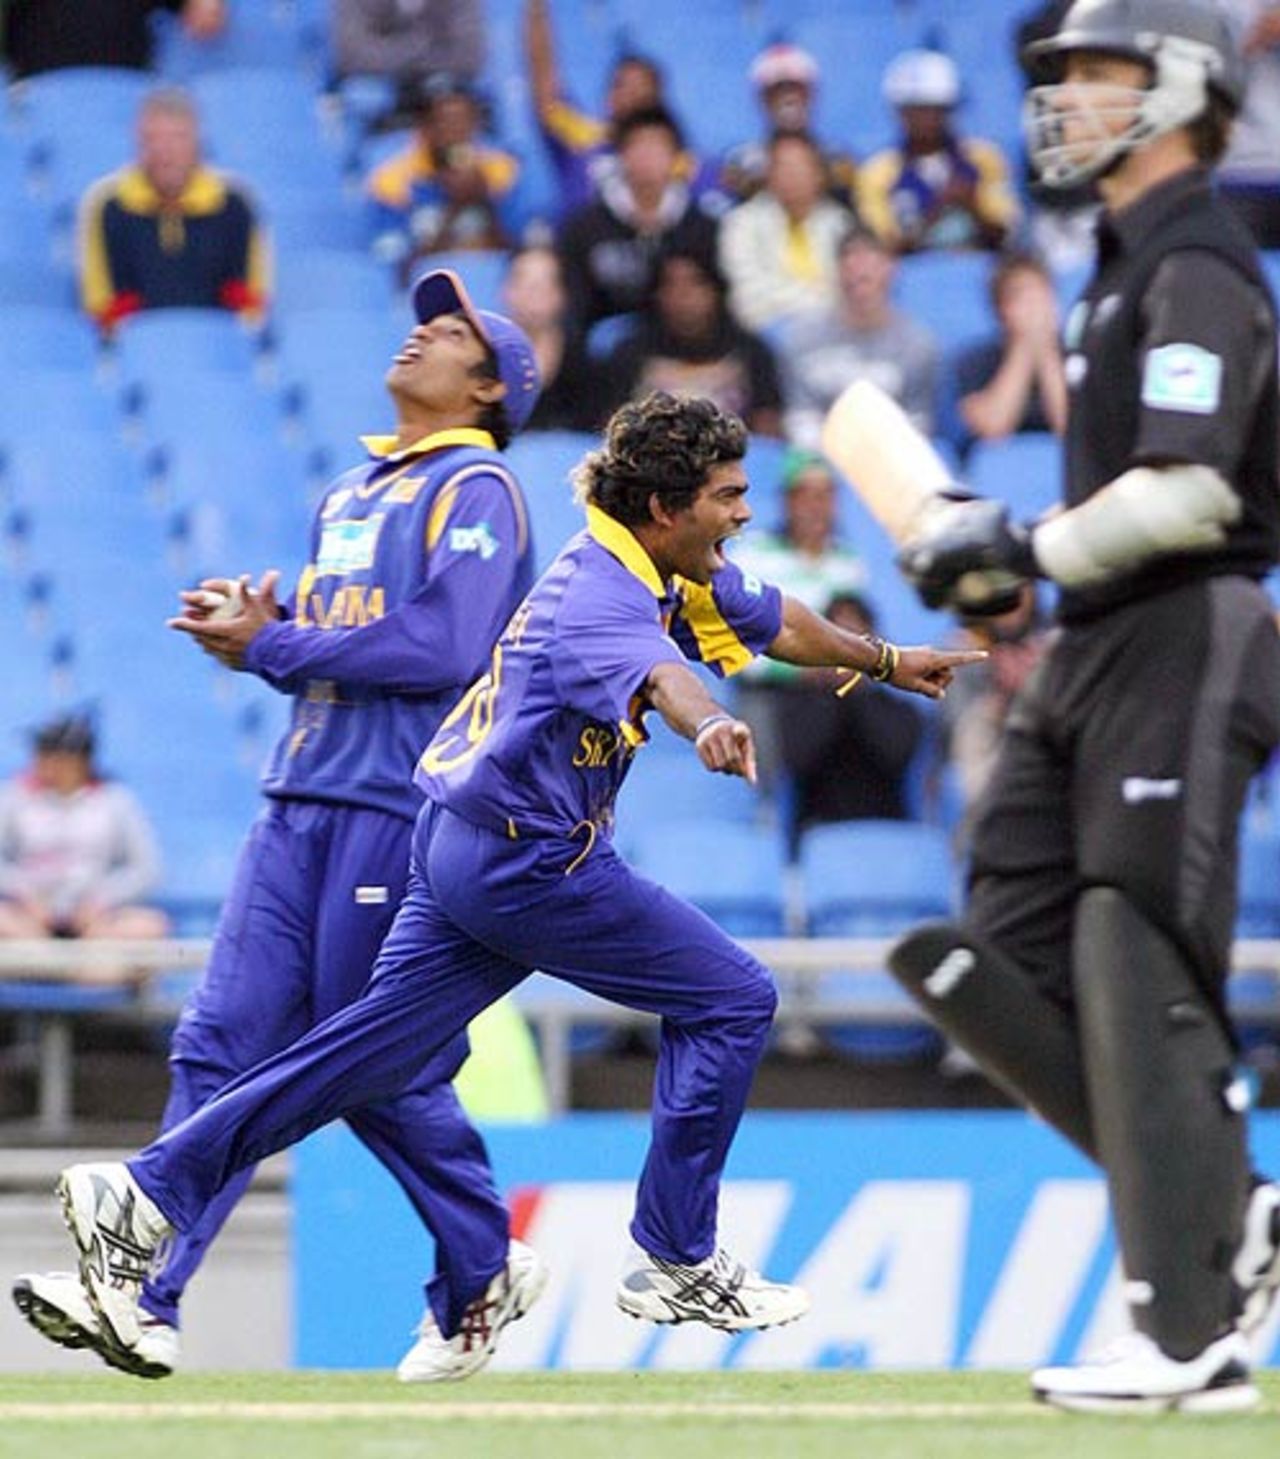 Lasith Malinga was on fire picking up three wickets, New Zealand v Sri Lanka, 4th ODI, Eden Park, January 6, 2007